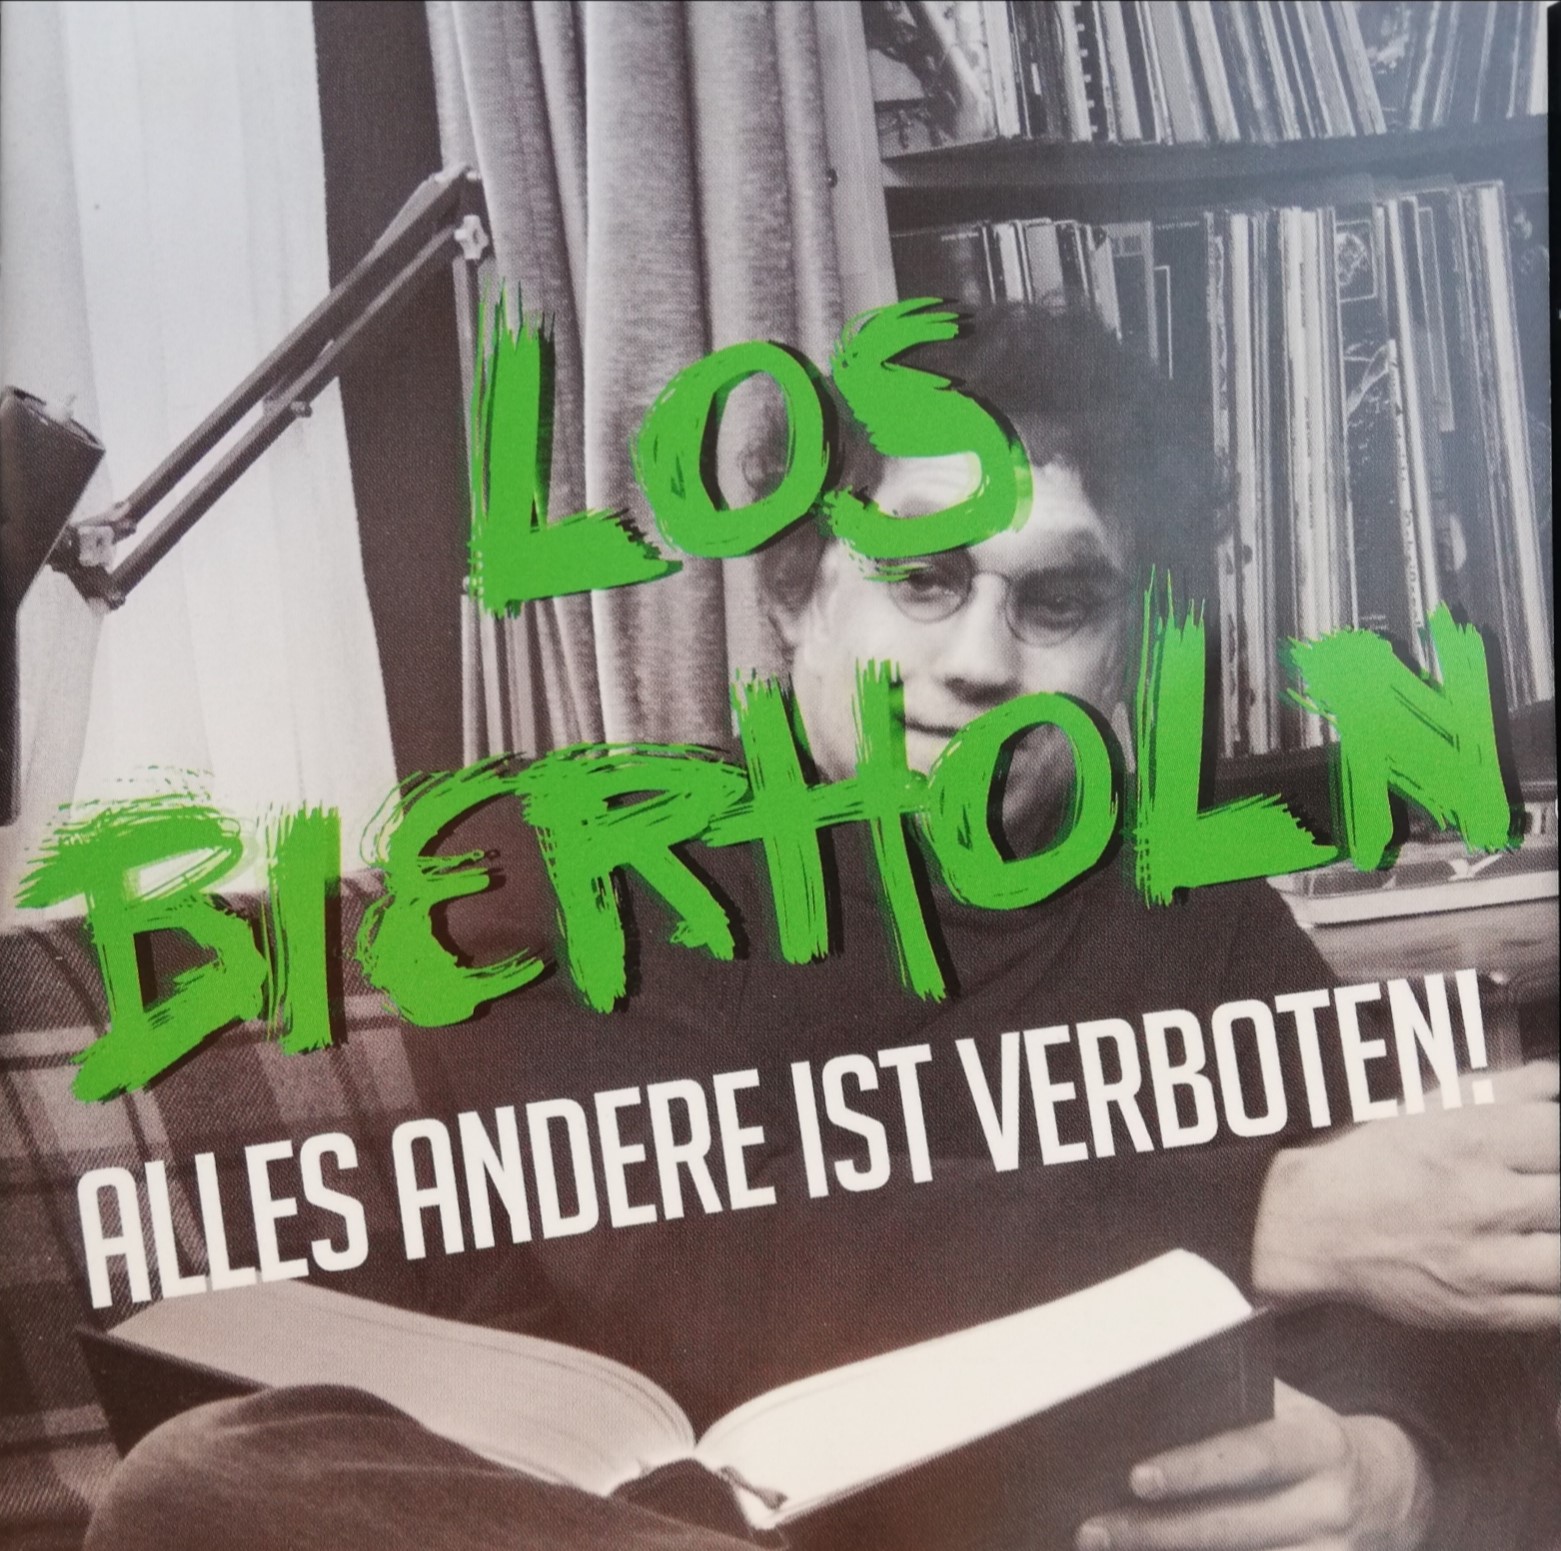 Los Bierholn - Alles andere ist verboten! (2016)